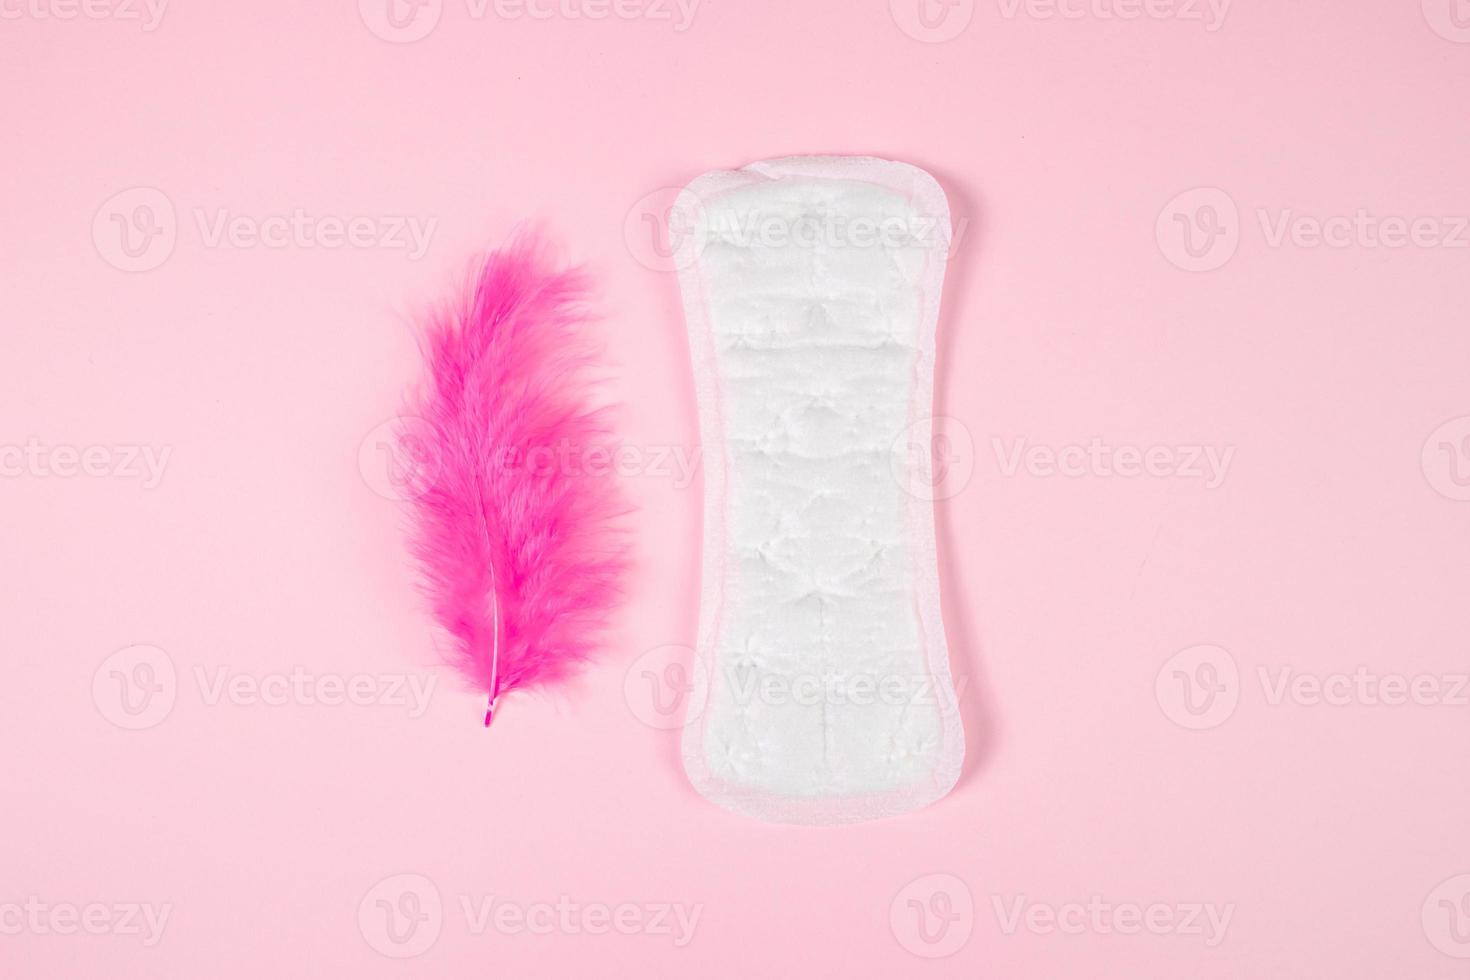 serviette hygiénique et plume rose sur fond coloré. produit d'hygiène féminine quotidien. photo